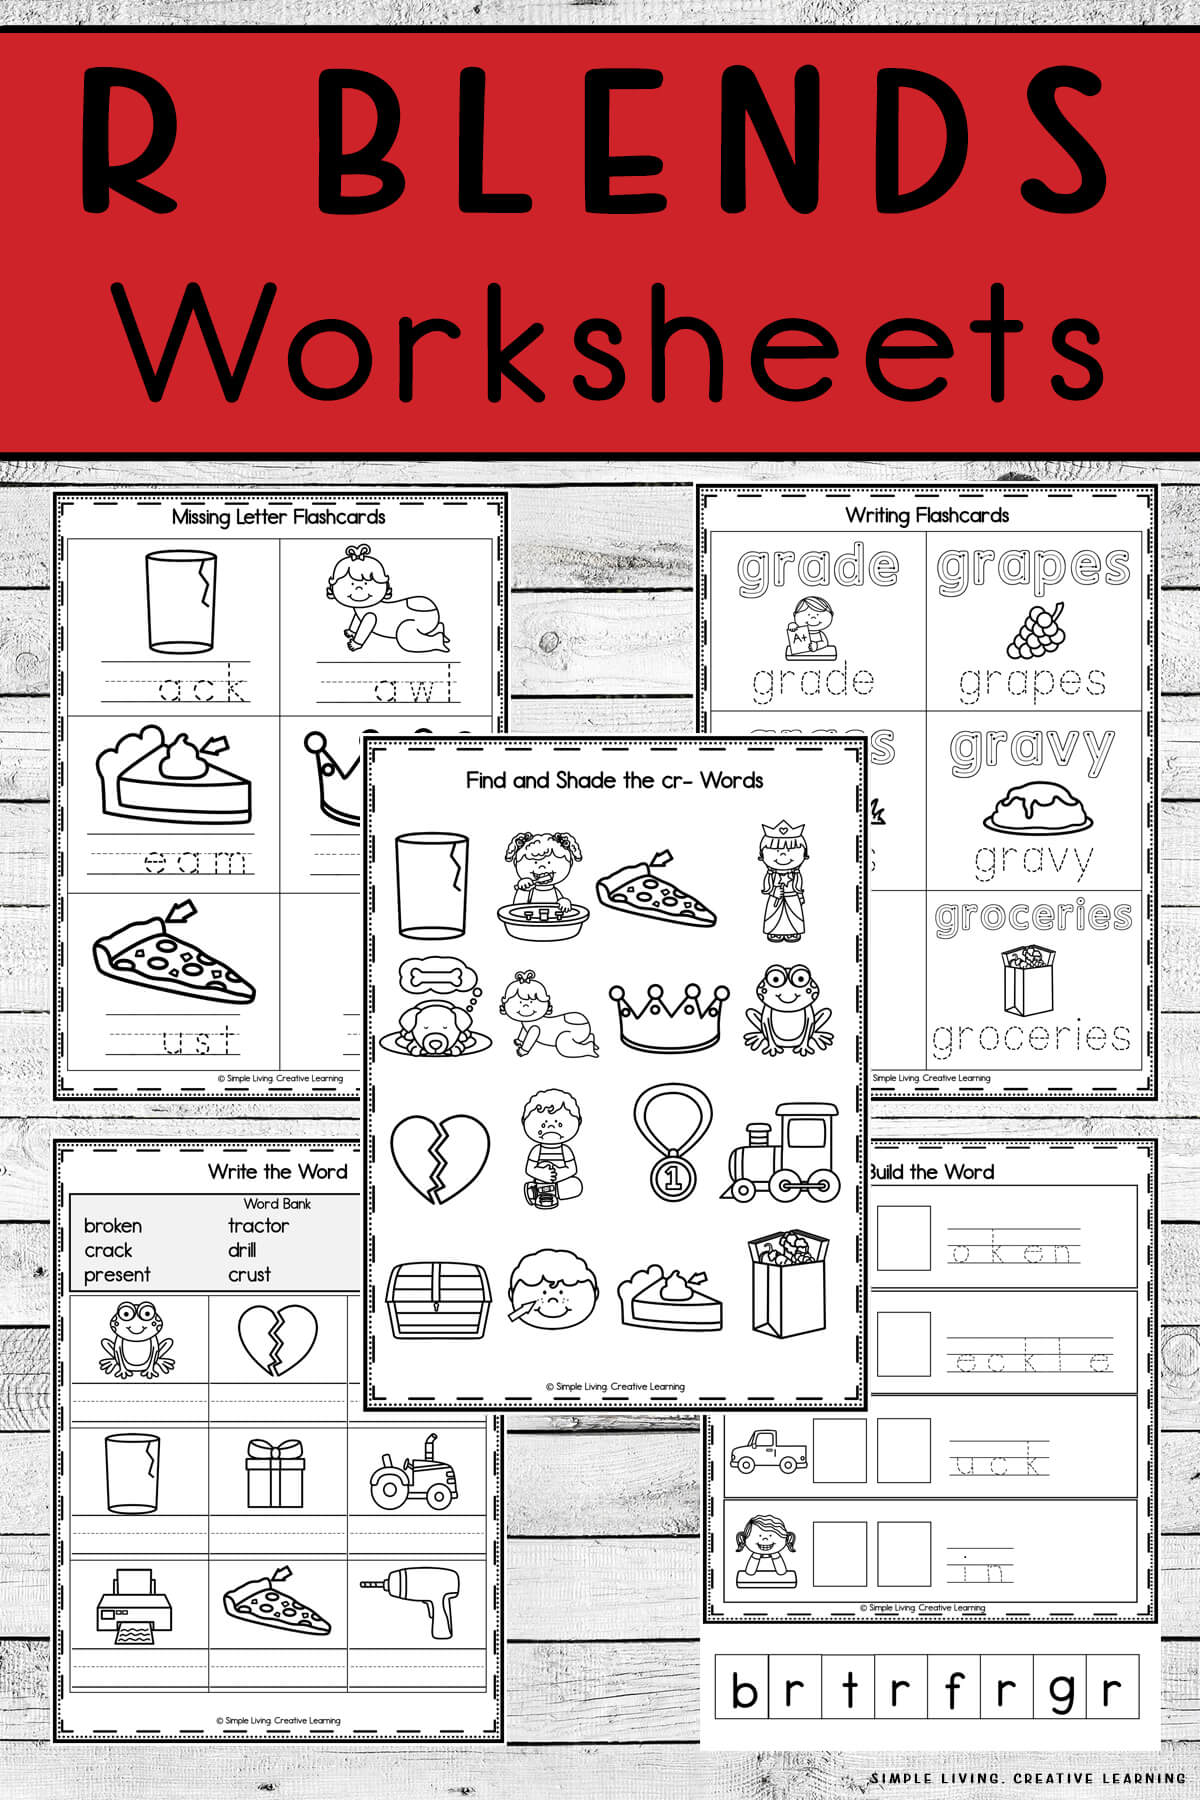 R Blends Worksheets 